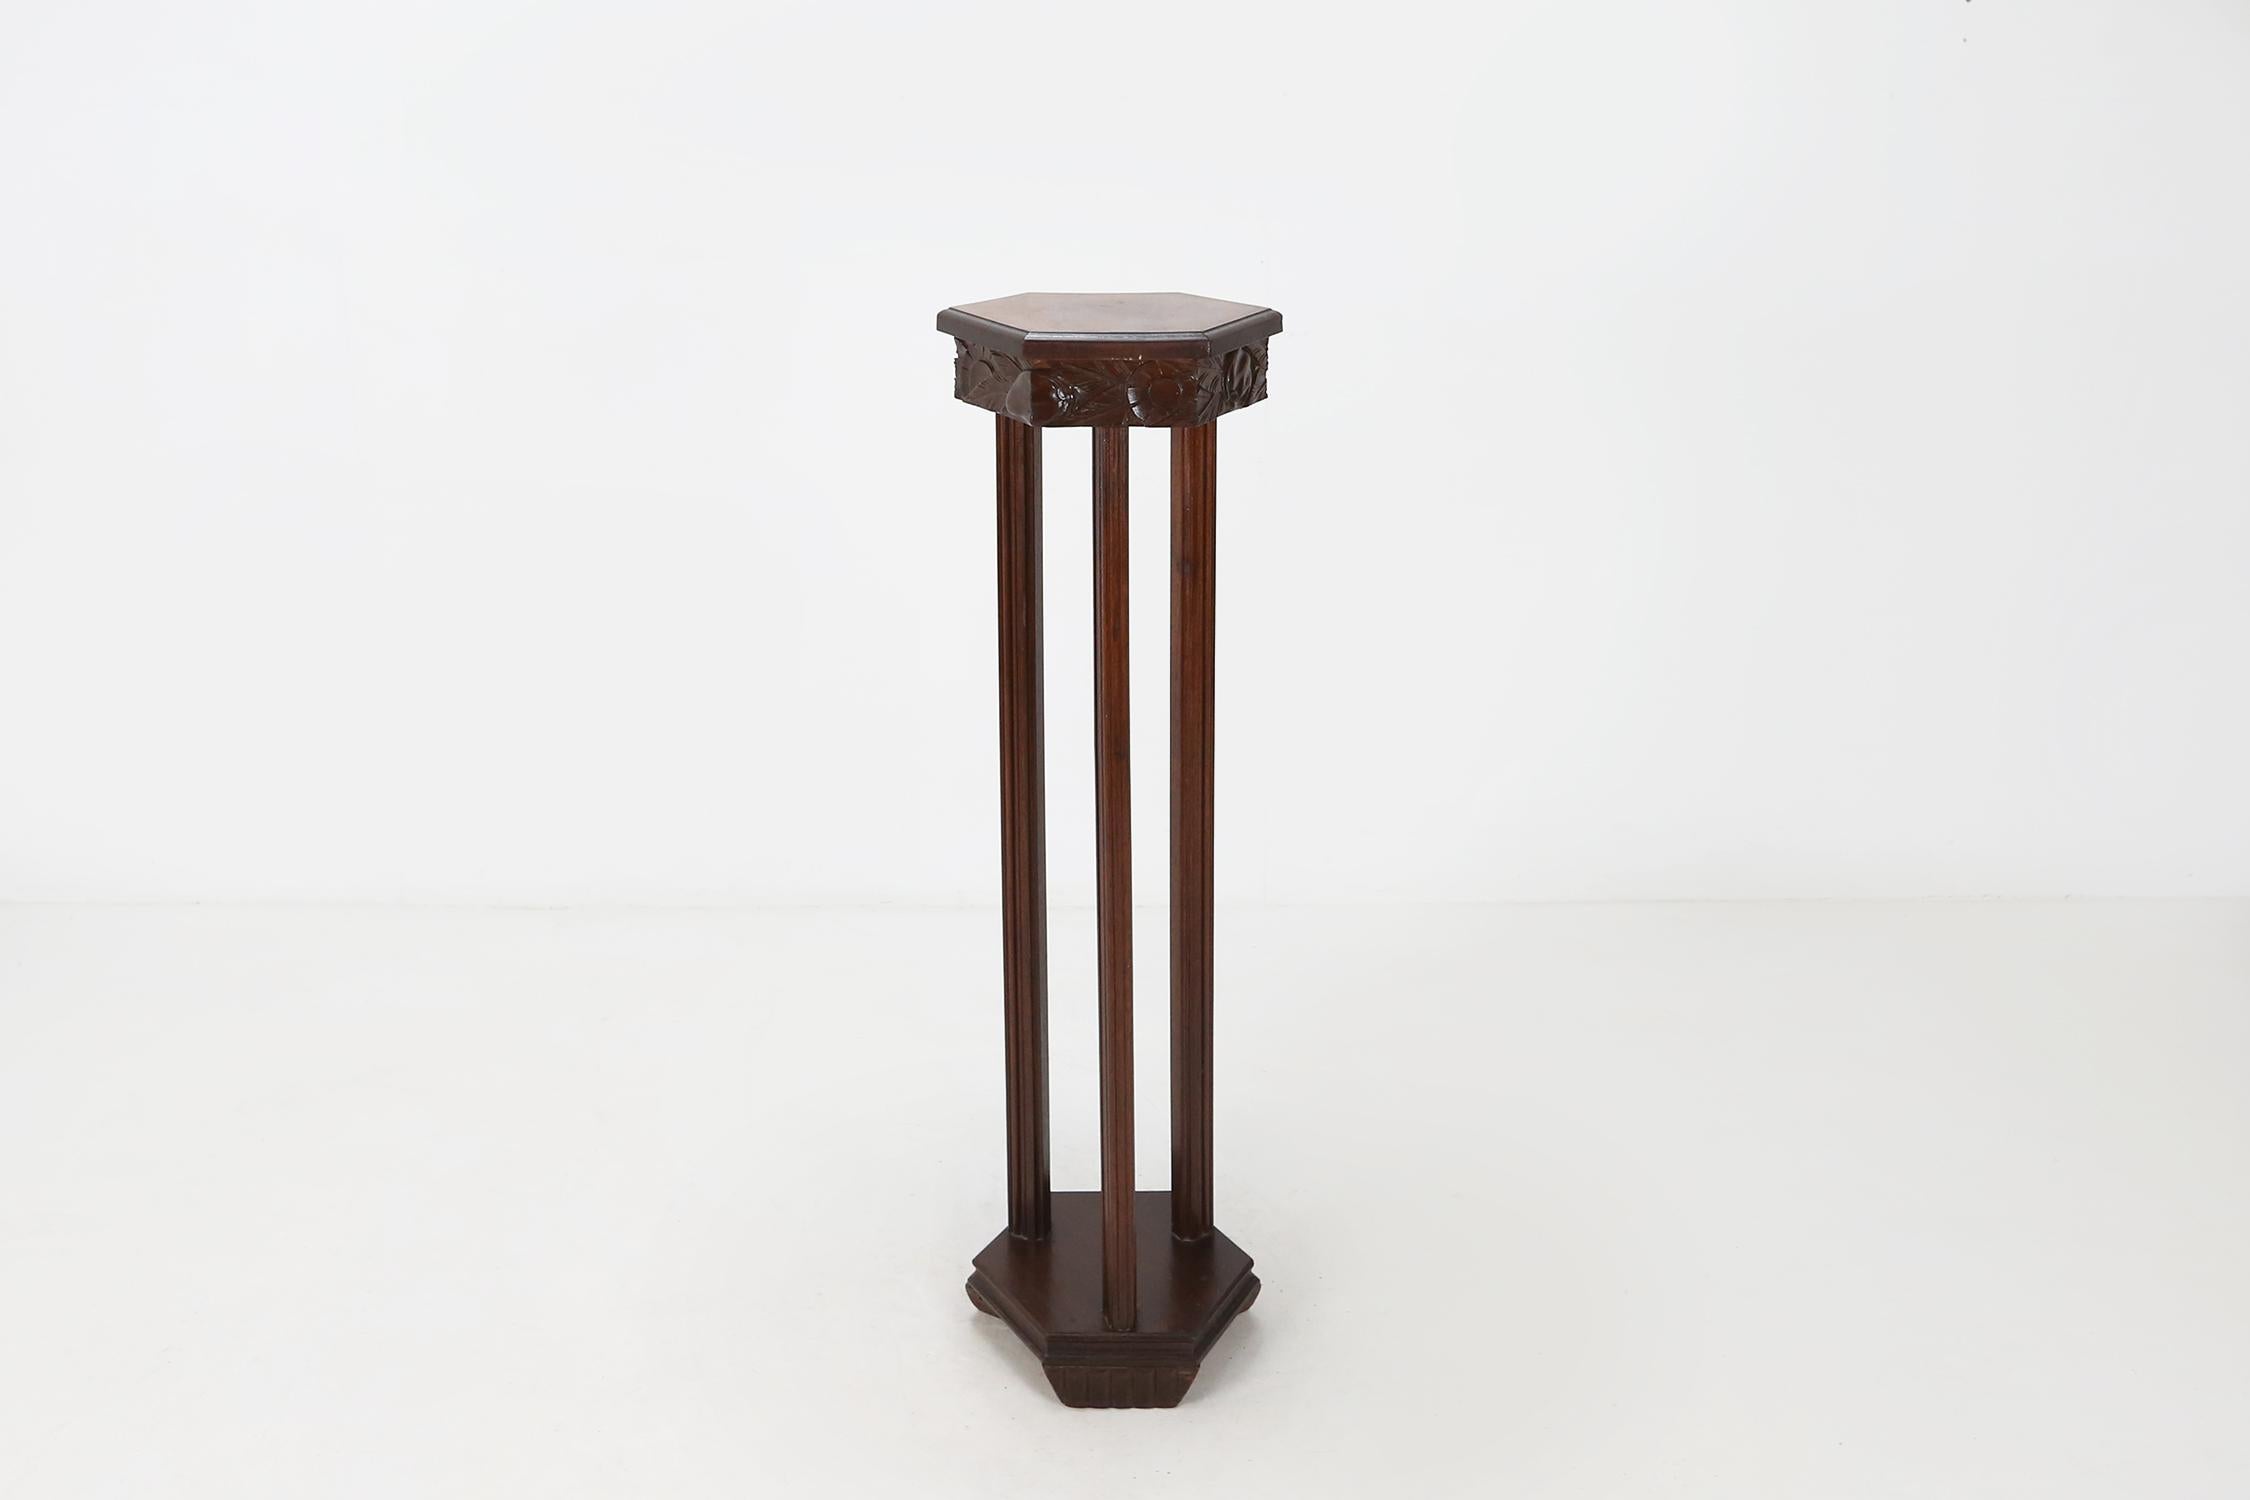 Pied de stal Art Déco, table console. En bois avec de jolis détails sculpturaux. Parfait pour un vase ou des fleurs.